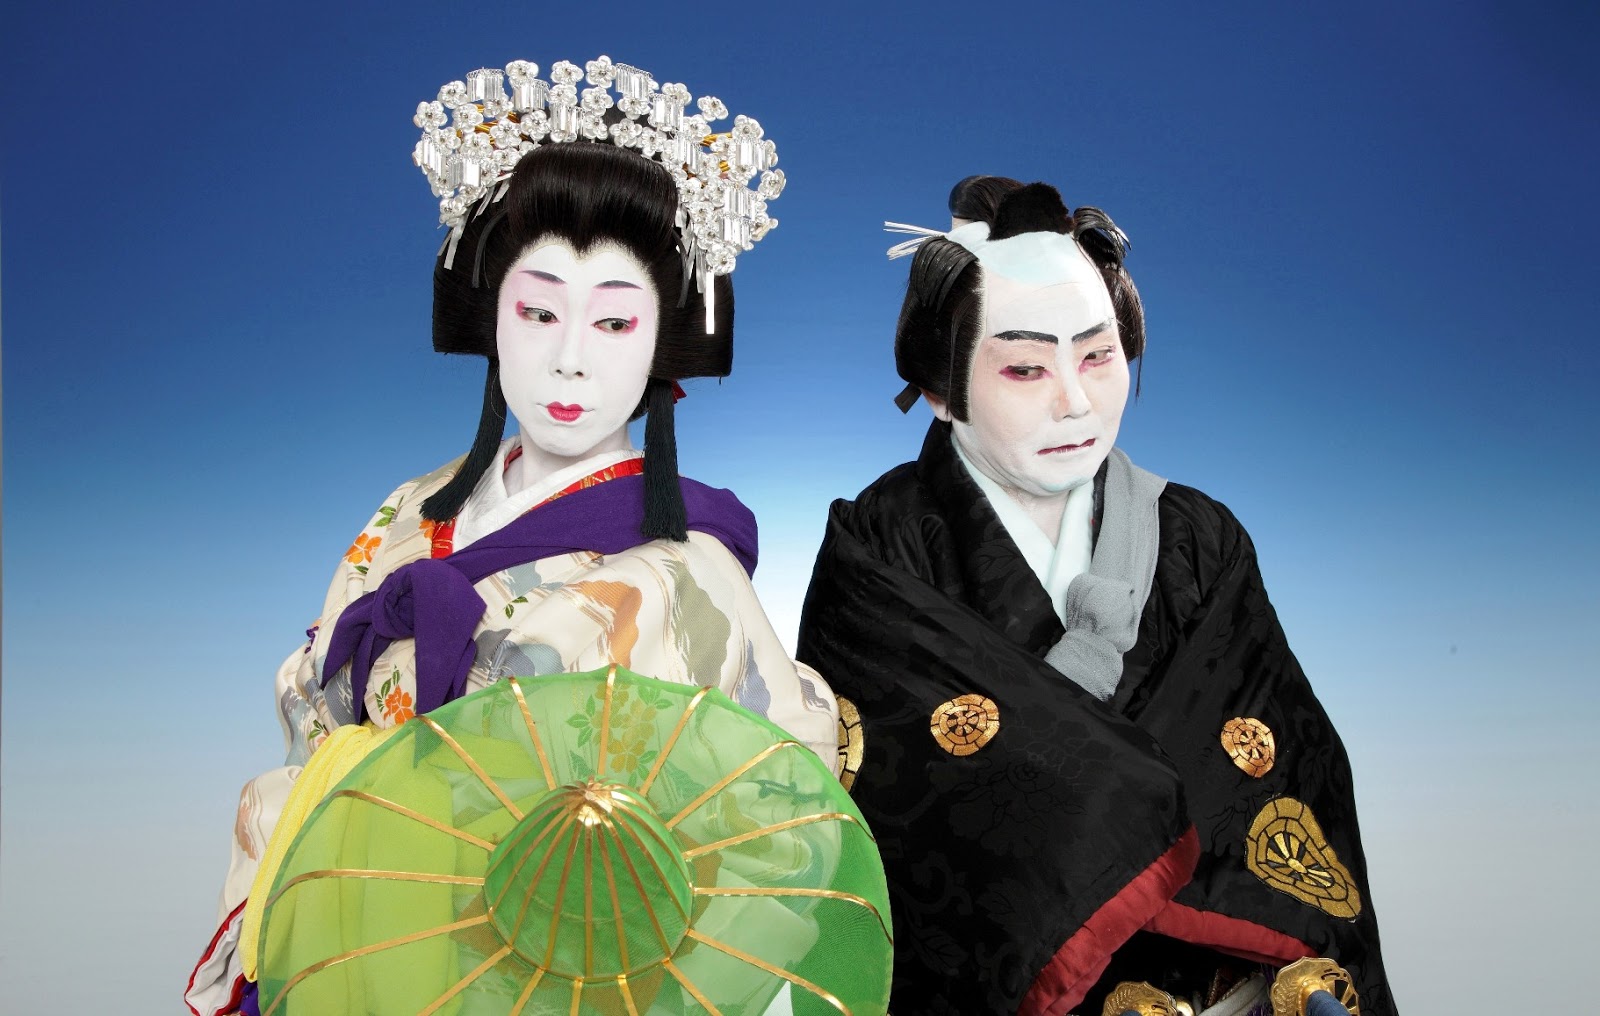 https://blogger.googleusercontent.com/img/b/R29vZ2xl/AVvXsEgN149kGo3c2kex1yC1I1sQ5tDOSHz9jLDPsmpKcFJ9b6oiQnkJeCfUbRyoyqy7qLHGp0F7ltWiJBv553lkVKITQ01VoHusF1vn1duIeiw2DBIQgUyGxzmpAA5qNUSXWnLOMaOB2qVzsUZ_/s1600/Kabuki-Dance-L-R-Nishizaki-Emino-Bando-KotojiToshio-Kiyofuji.jpg